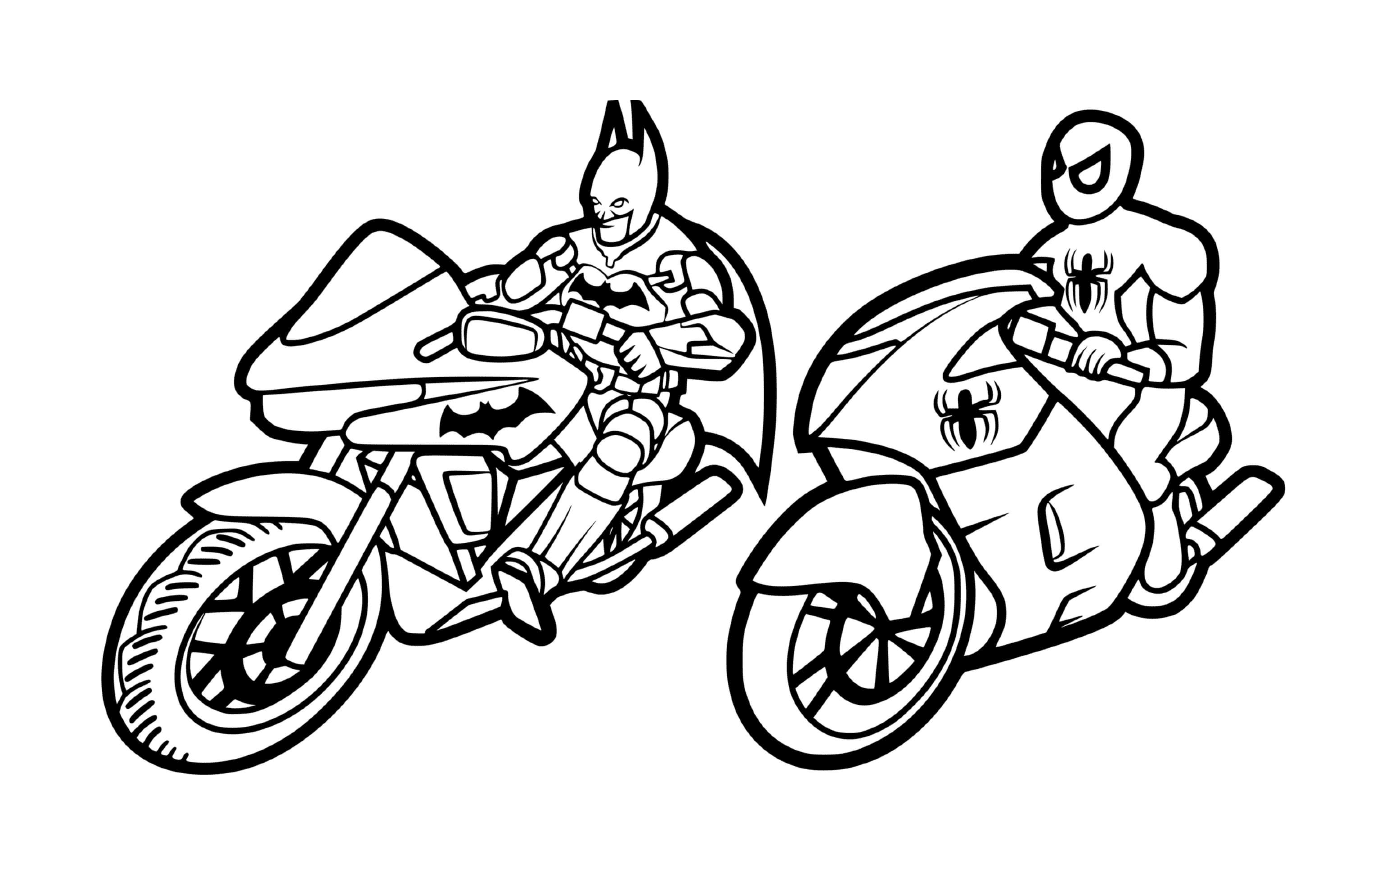  Batman e Homem-Aranha de moto 